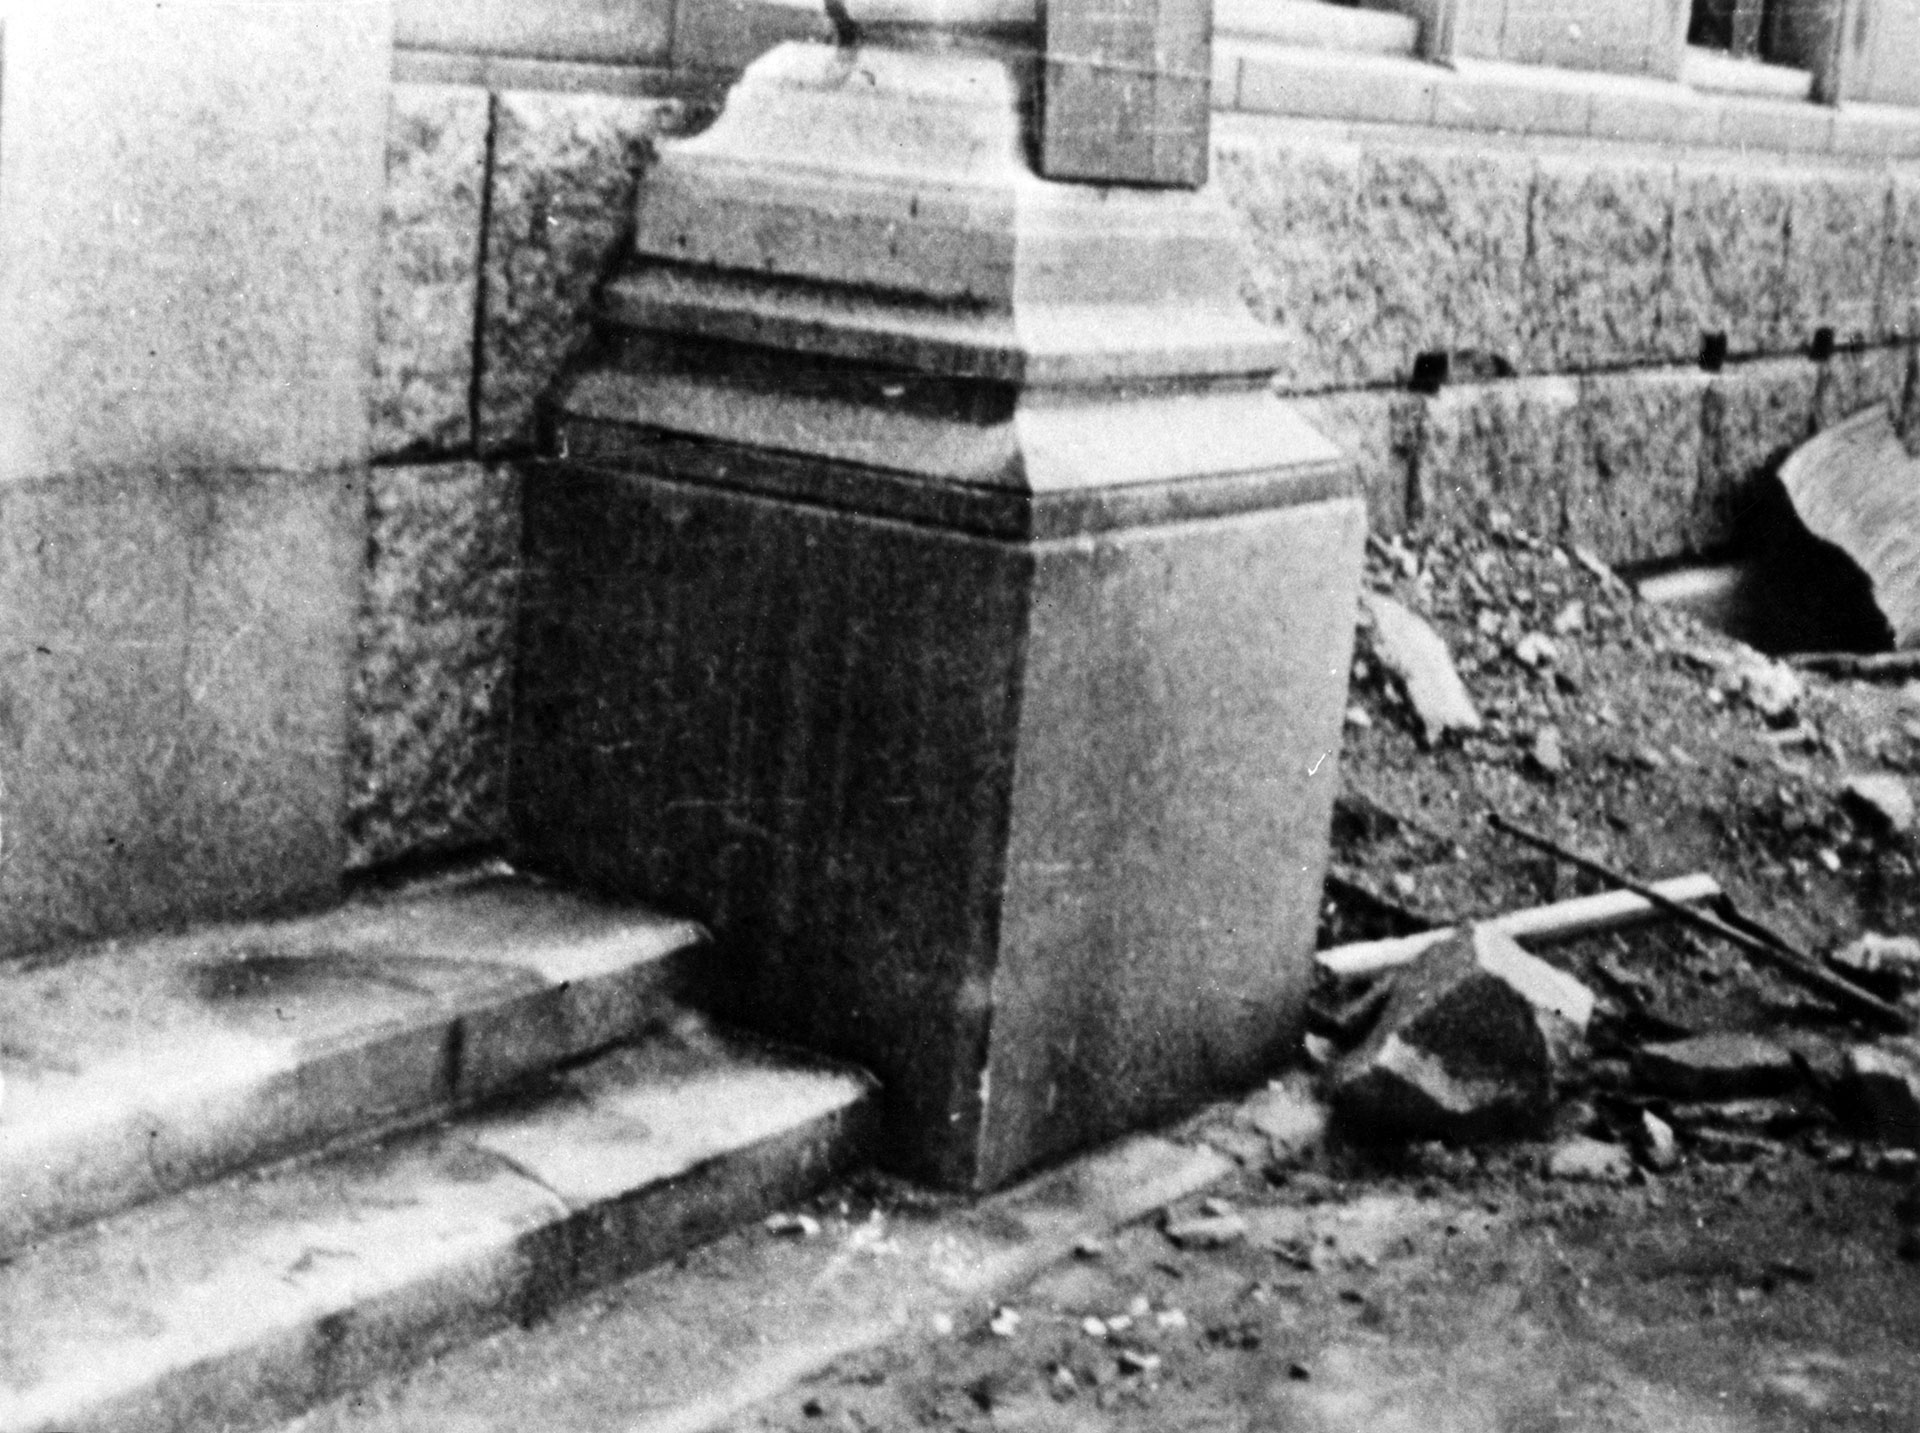 La "sombra" de una víctima en unos escalones de un edificio, después del bombardeo atómico de la ciudad japonesa de Hiroshima. La persona estaba sentada en los escalones cuando el calor de la explosión quemó la superficie de la piedra alrededor del cuerpo de la víctima que se evaporó (Keystone/Hulton Archive/Getty Images)
